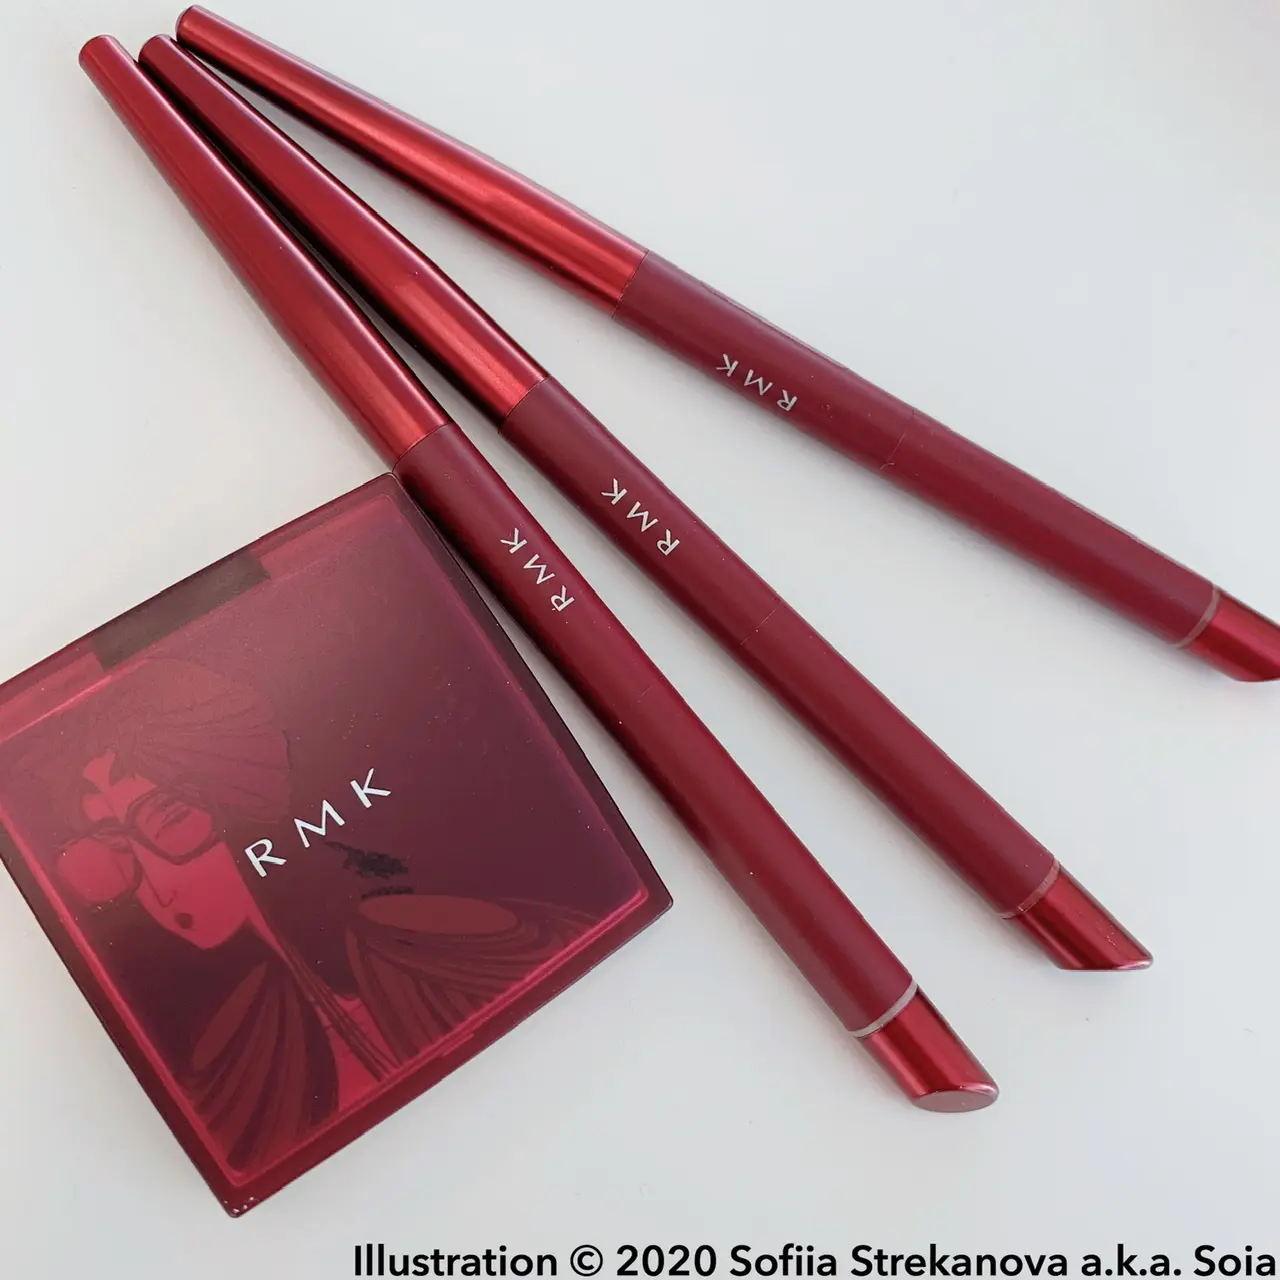 RMK　2020年秋冬の最新コレクション。赤いパッケージが印象的なアイメイクがこちら。